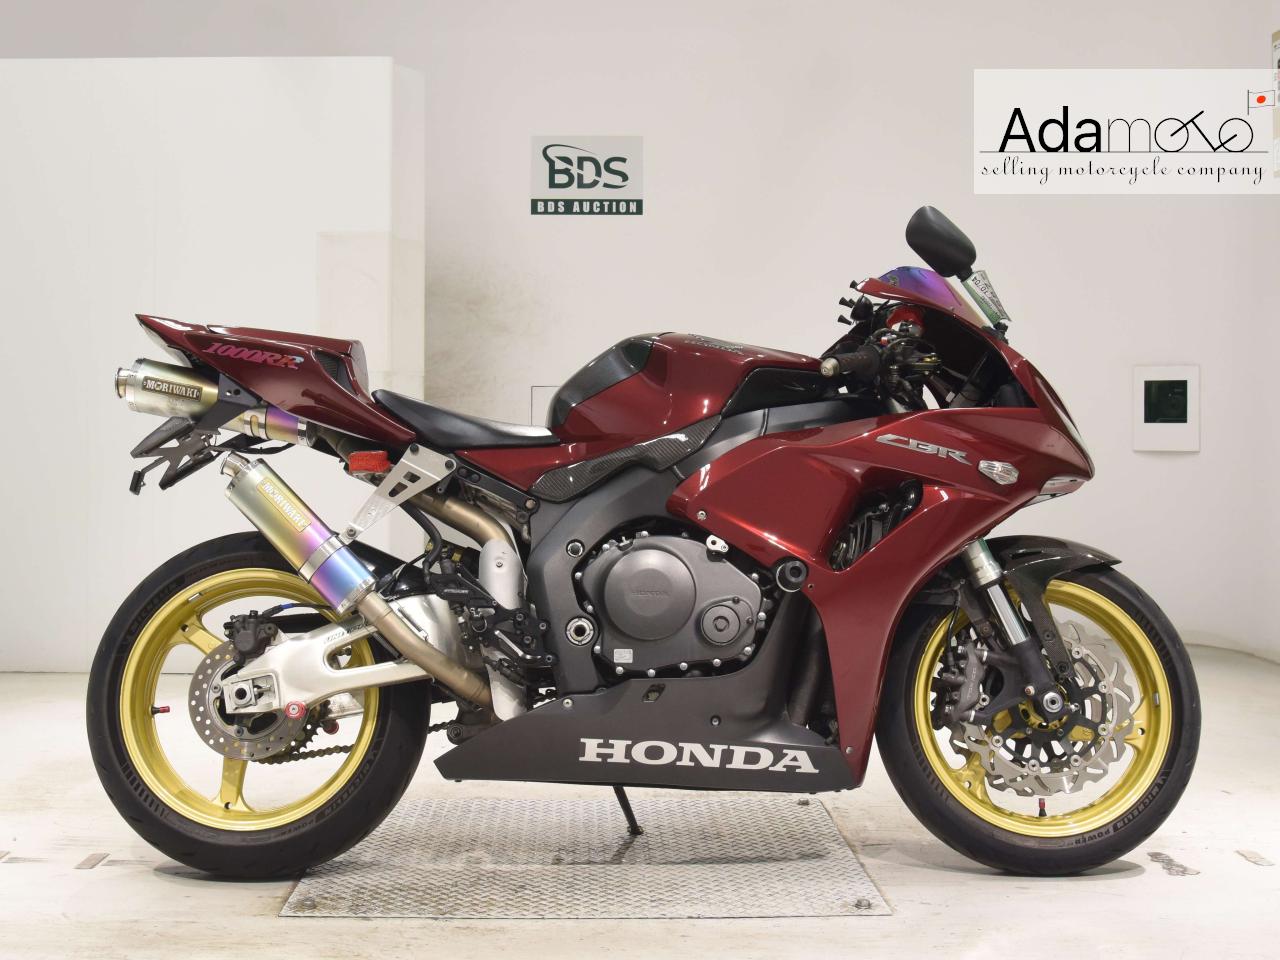 Honda CBR1000RR - Adamoto - Motorcycles from Japan